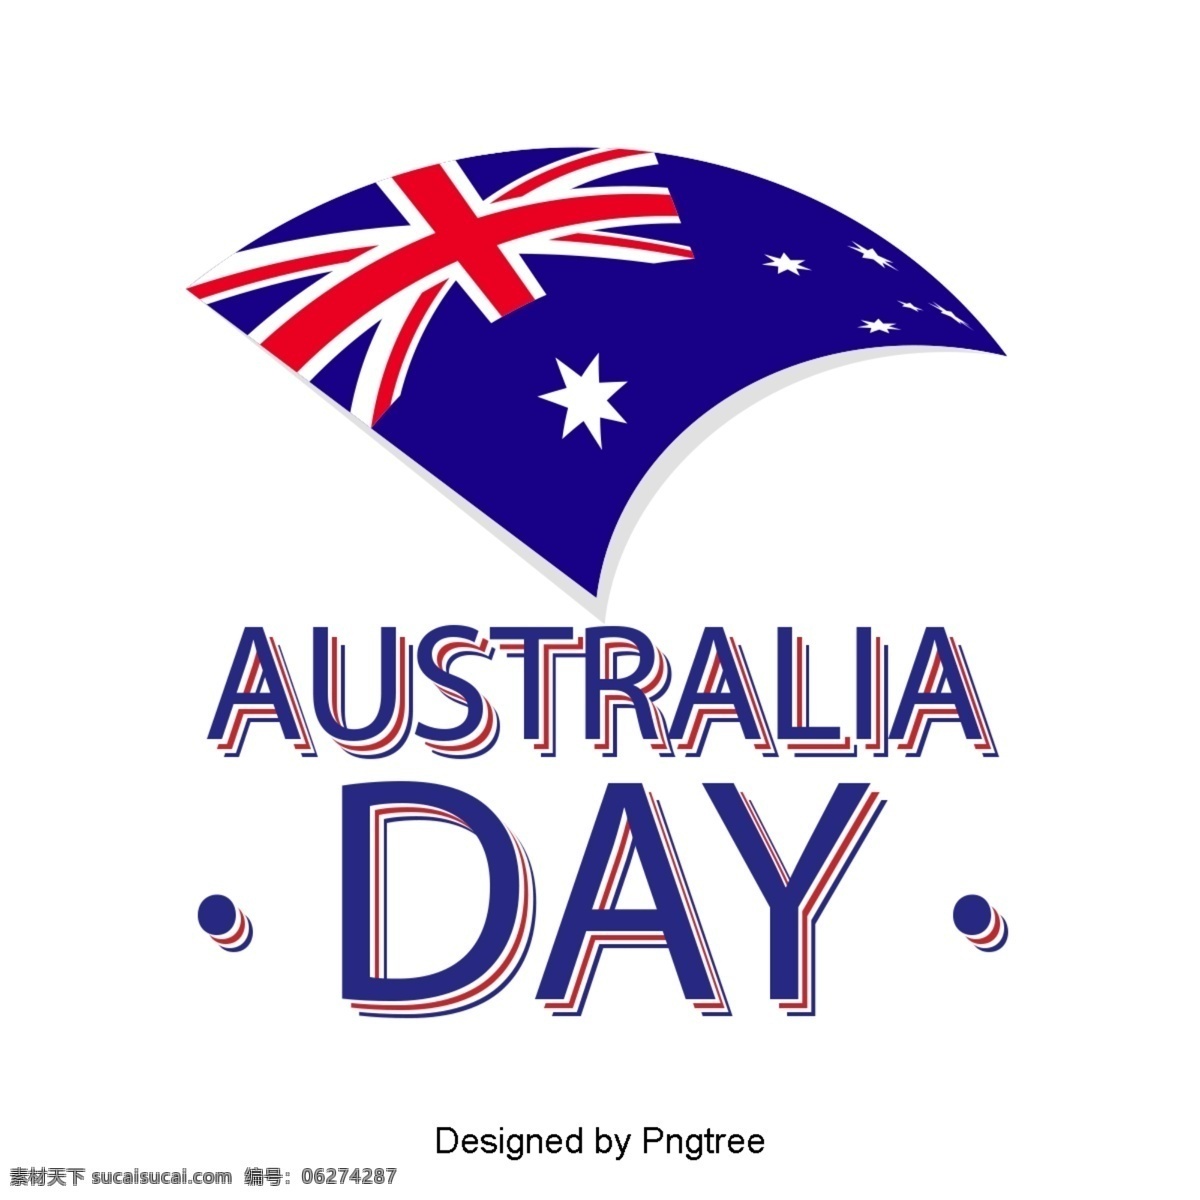 澳大利亚 国旗 蓝色 红色 星星 旗帜 字体 澳大利亚日